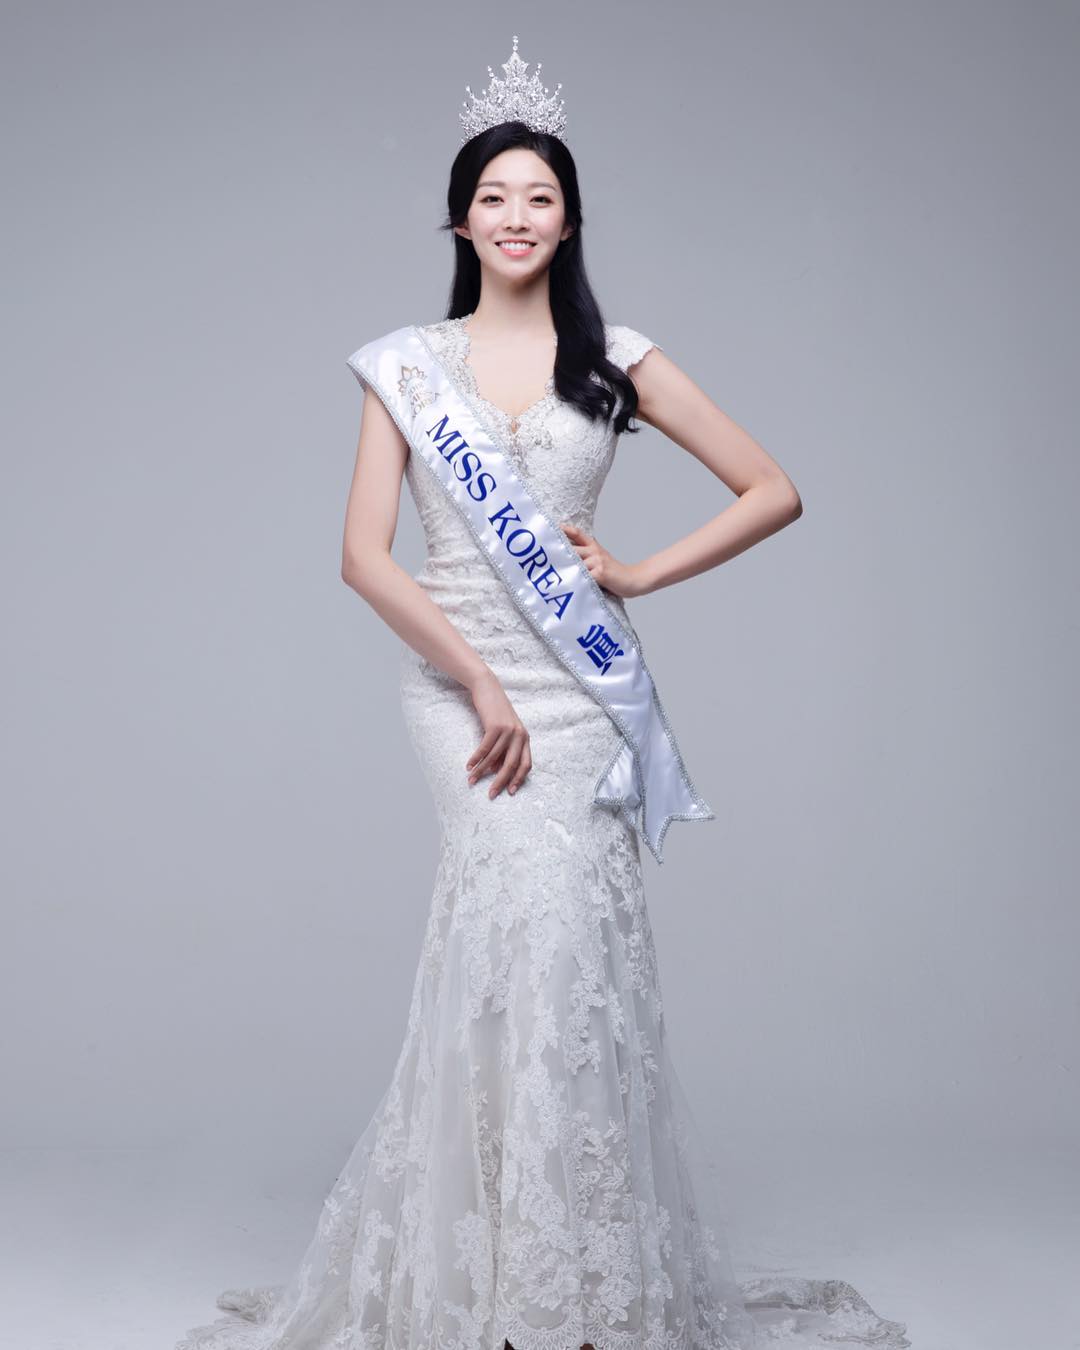 Hoa hậu Hàn Quốc từng bị chê bai nhan sắc thậm tệ 'lột xác' sau 5 năm - Ảnh 4.